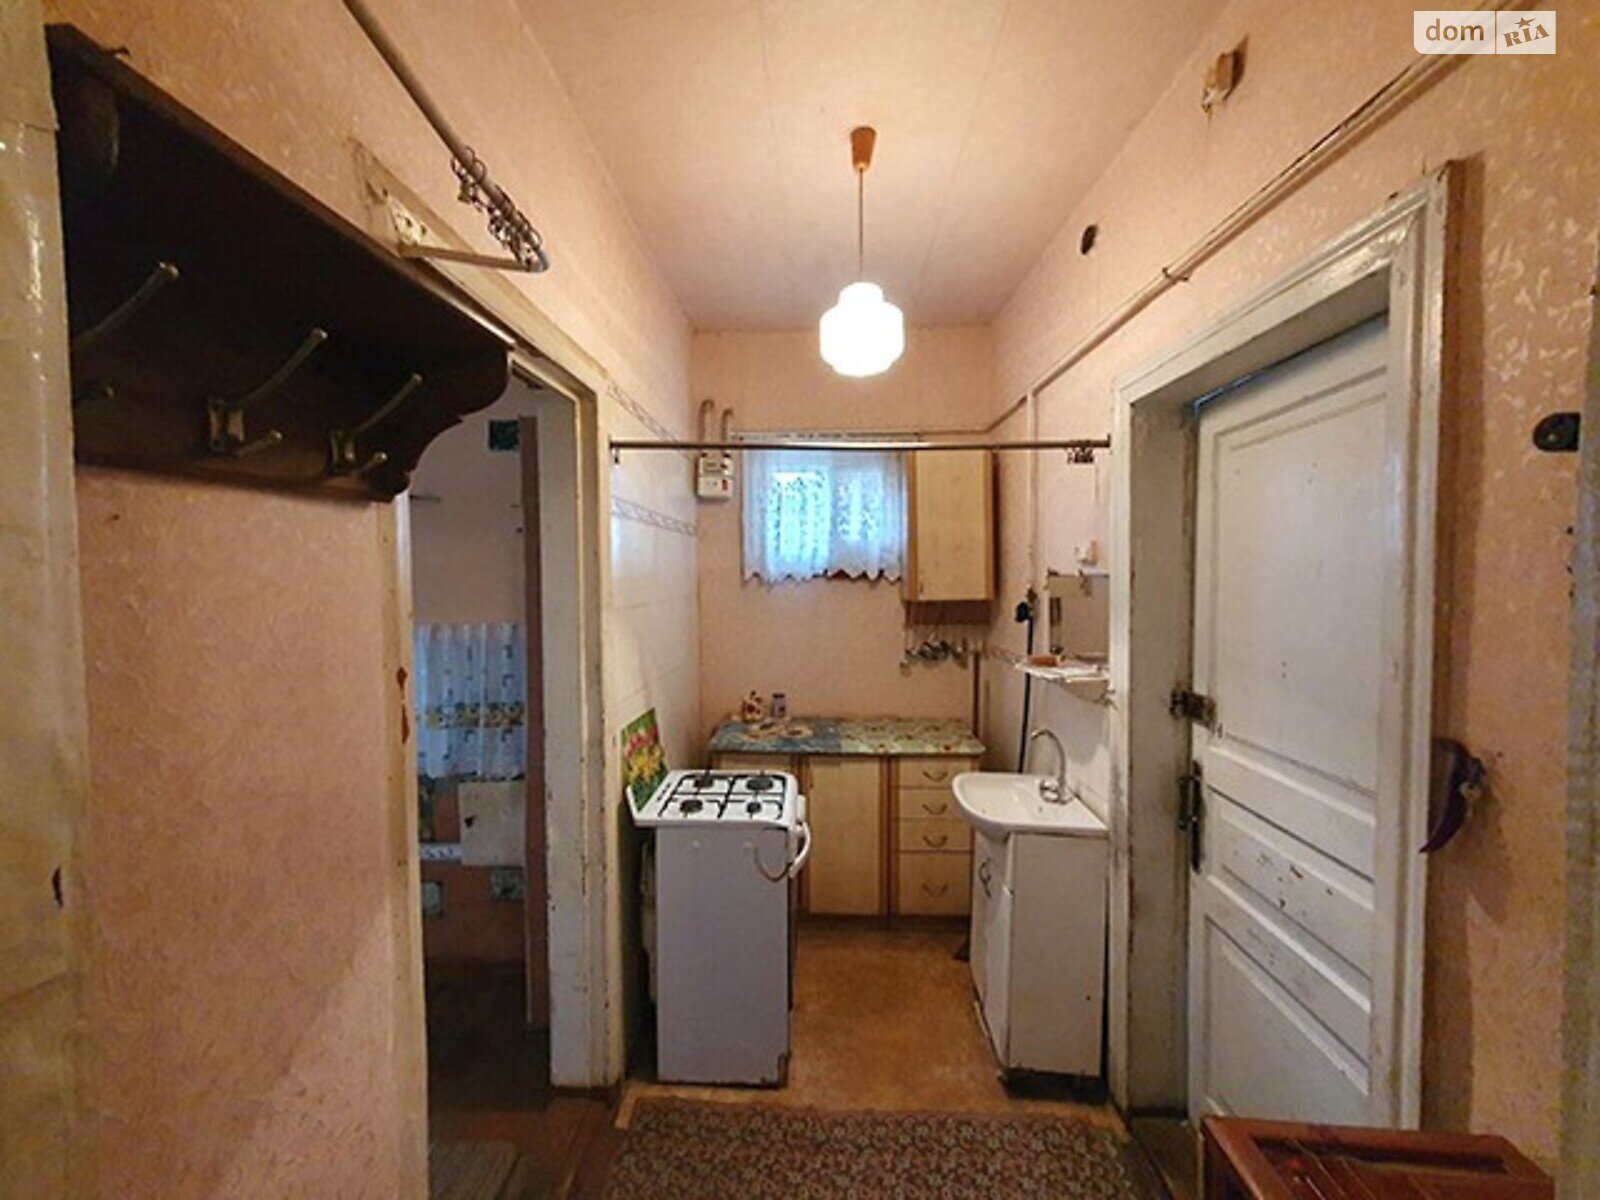 Продажа части дома в Конотопе, район Конотоп, 1 комната фото 1